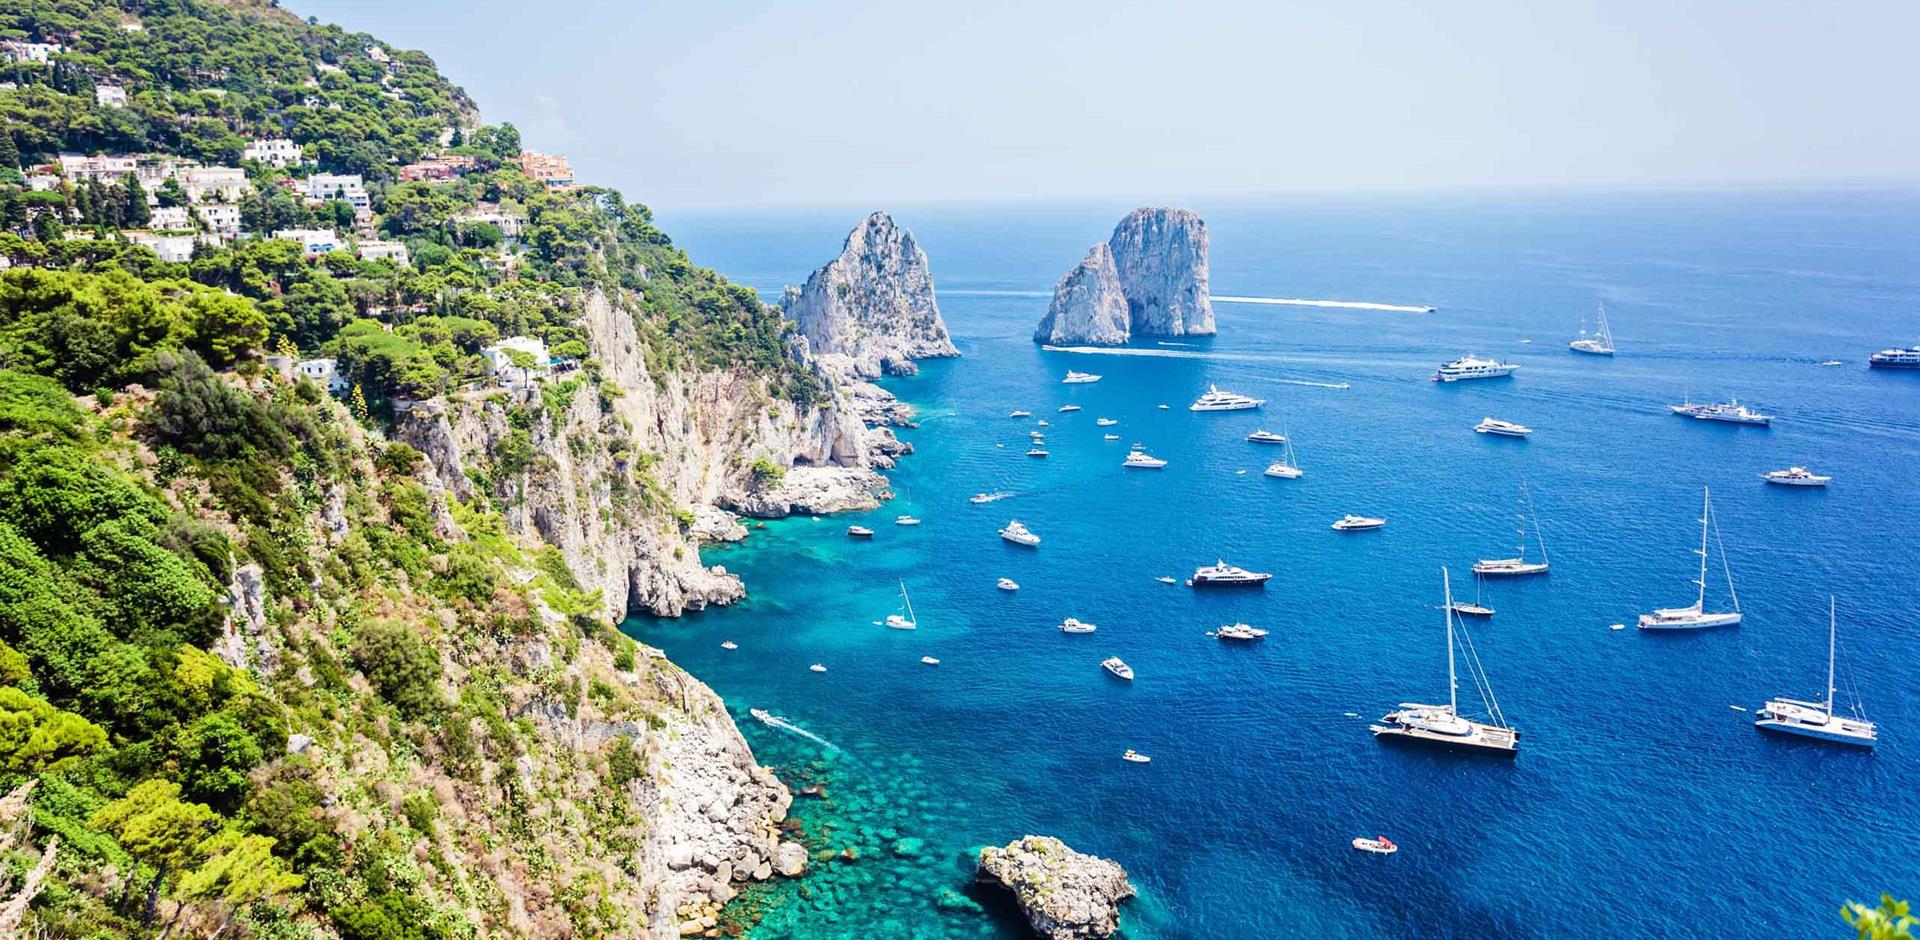 Private cruise along Amalfi Coast